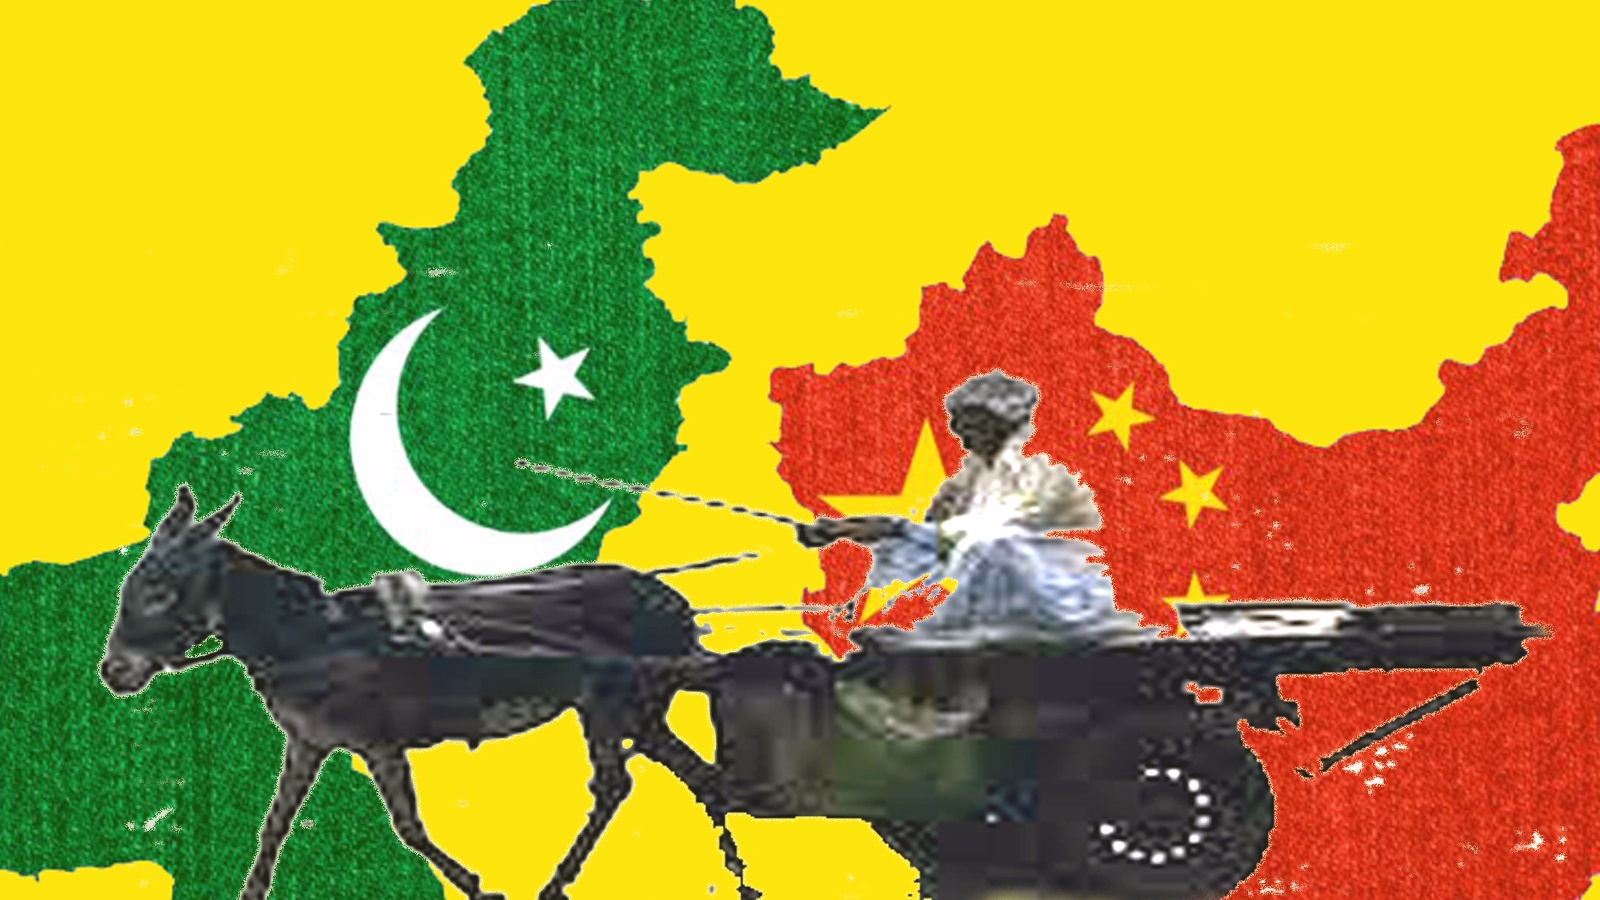 गधों (Donkey) की बढ़ती तादाद पर नियंत्रण के लिए पाकिस्तान ने चीन के साथ गधों के बारे में एक अहम करार किया है.